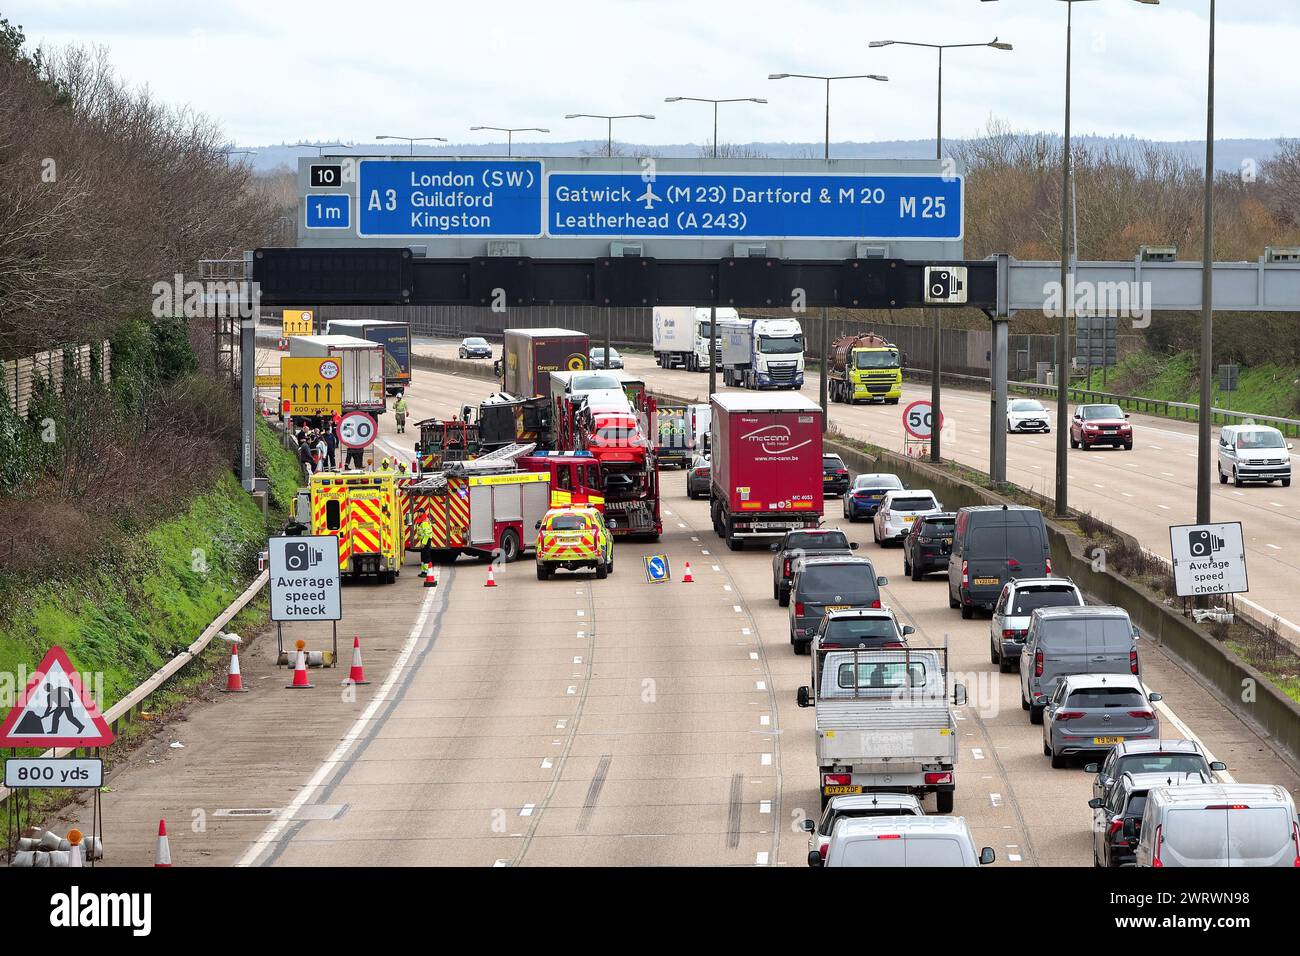 Un accident de la route à l'approche de la jonction 10, Wisley sur l'autoroute M25 avec des services d'urgence en présence Surrey Angleterre Royaume-Uni Banque D'Images